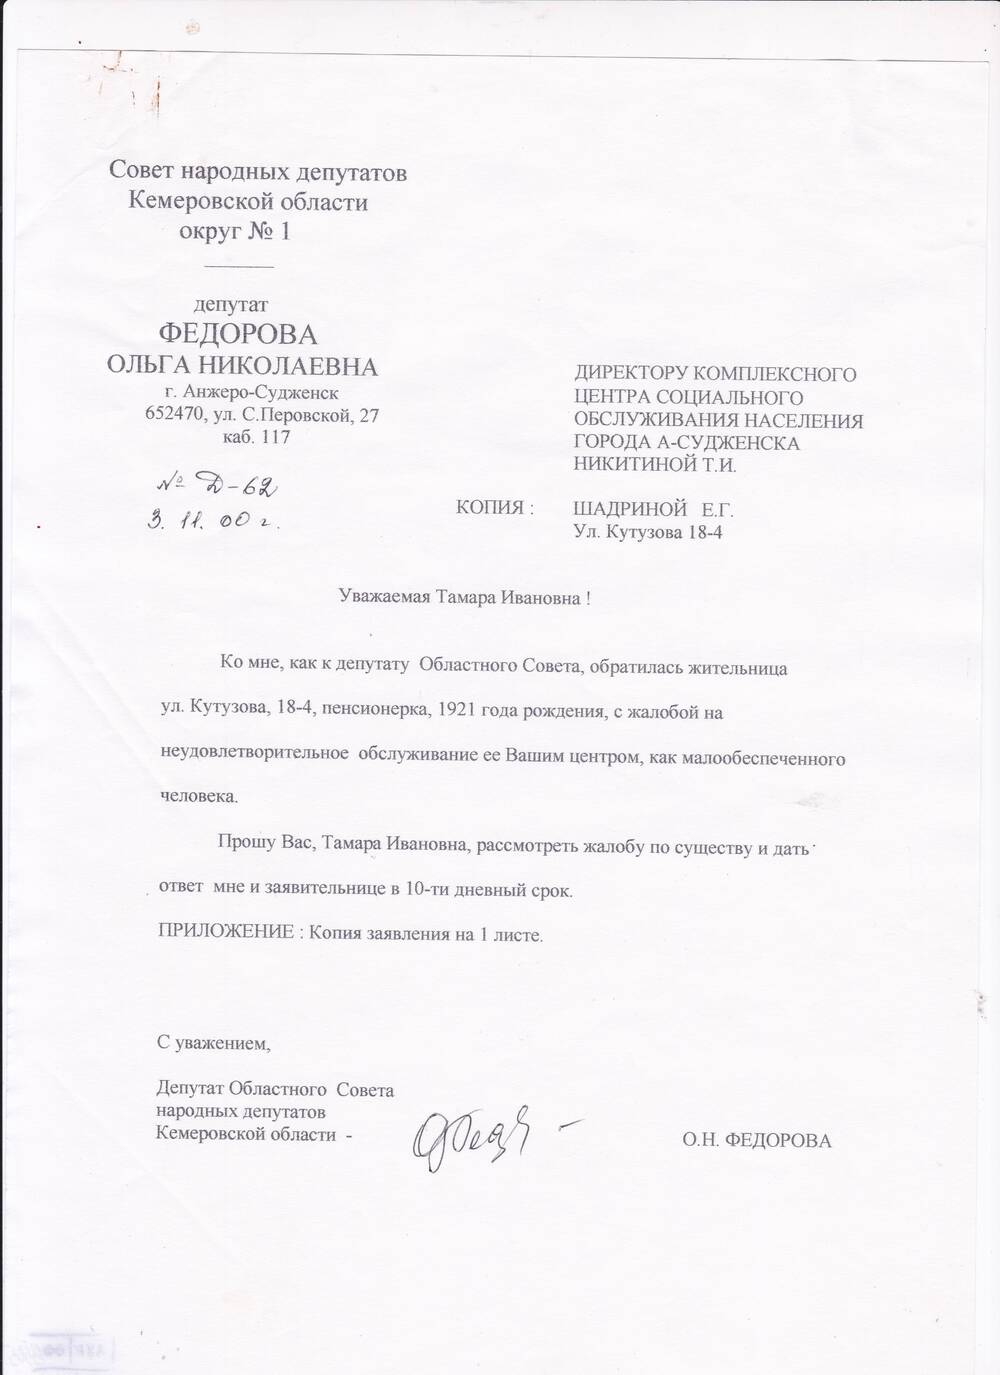 Запрос депутатский Федоровой О.Н. №Д-62 от 03.11.2000 г.